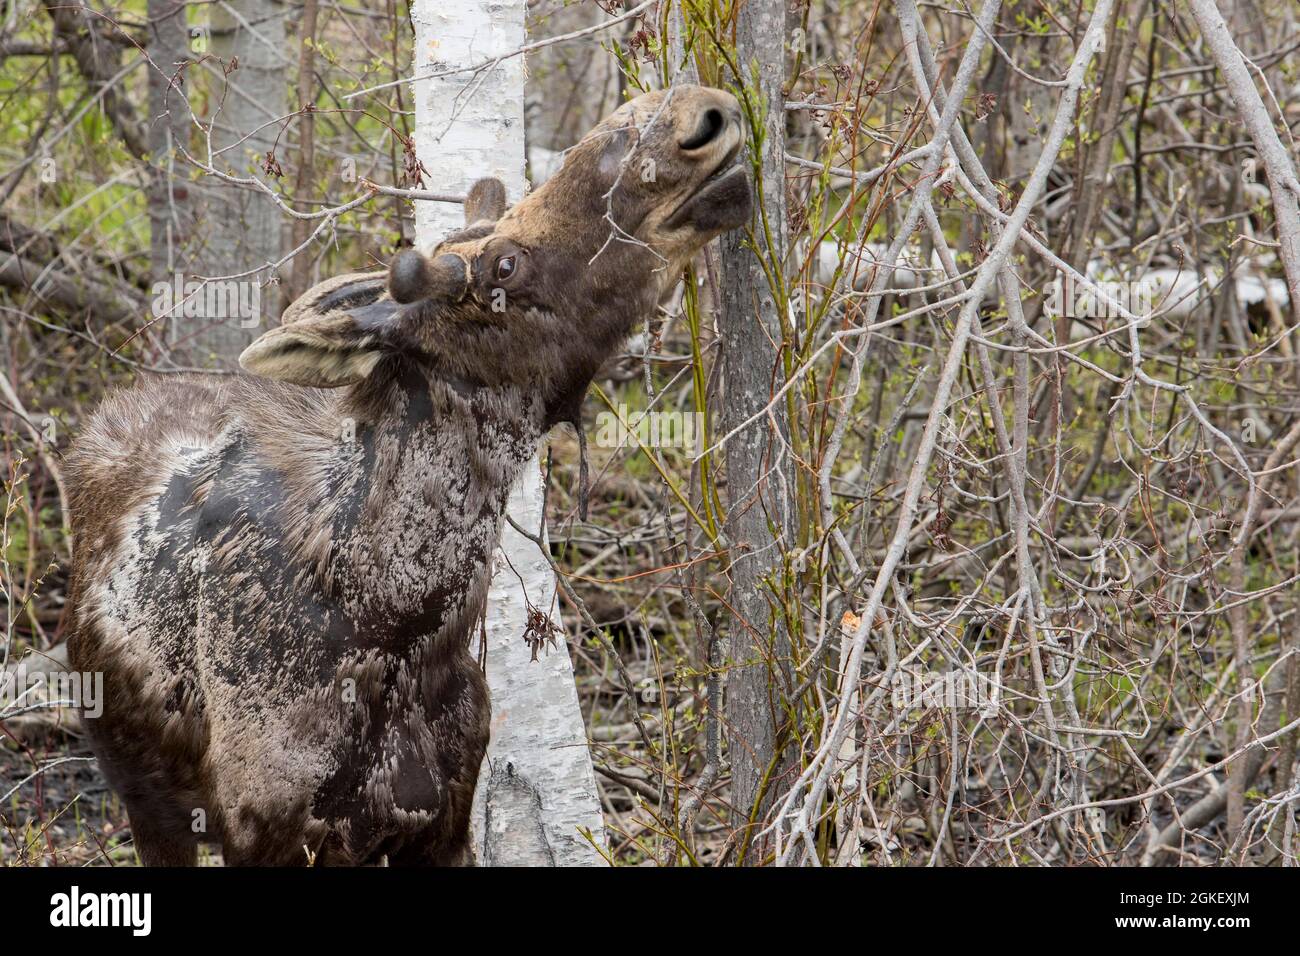 Americanus, americana, American moose, American moose (Alces alces), moose, elk, deer, deer, hoofed animals, even-toed ungulates, mammals, Animals Stock Photo